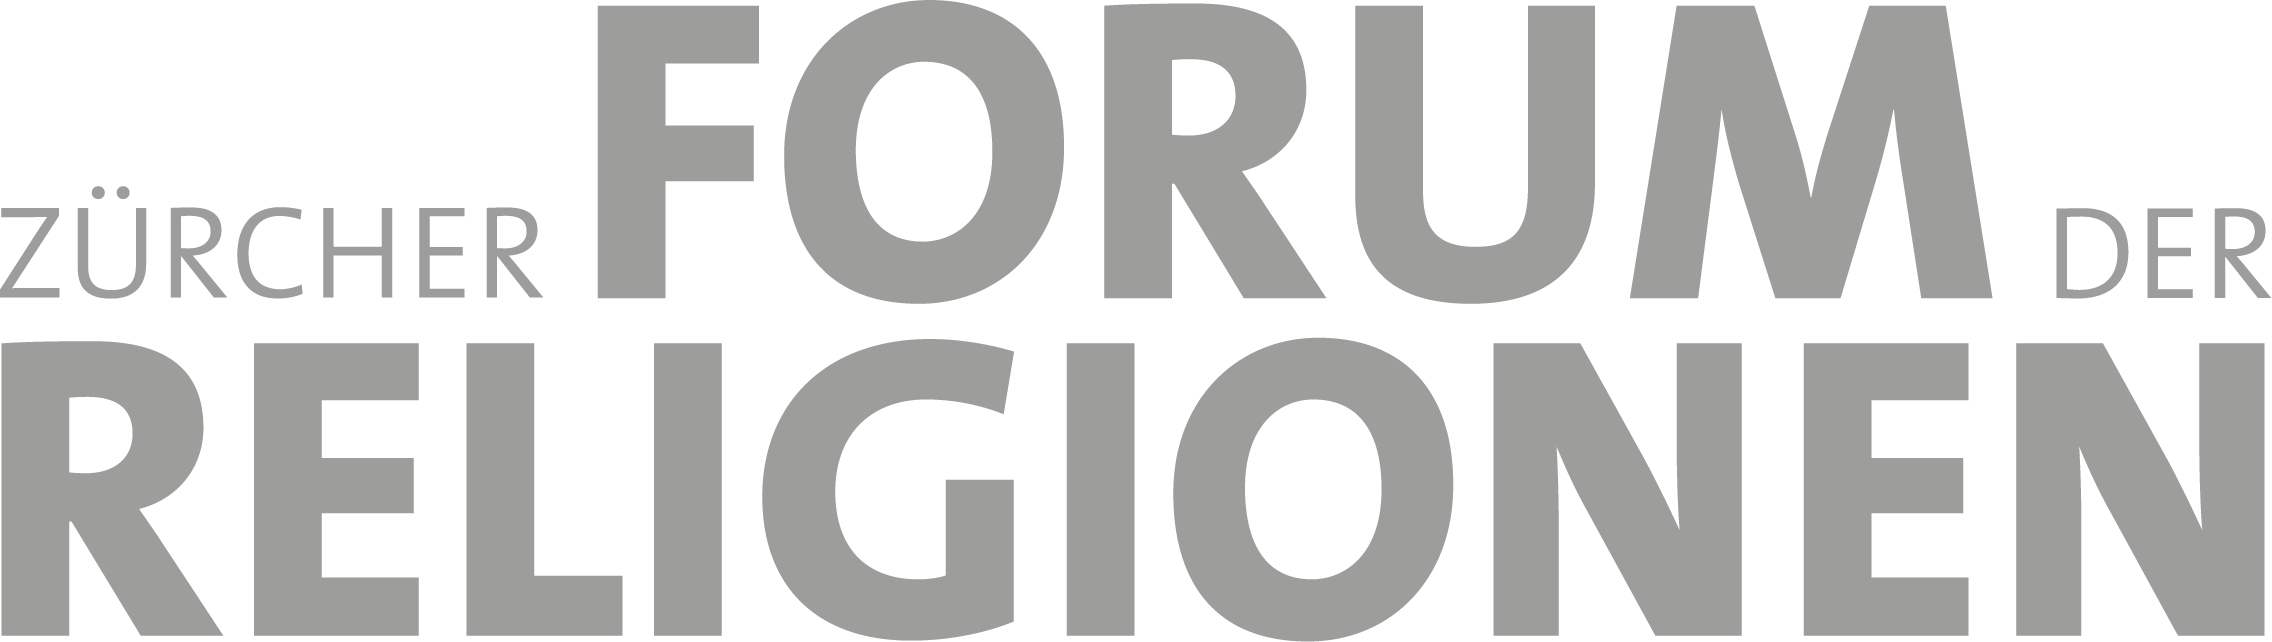 Zürcher Forum der Religionen